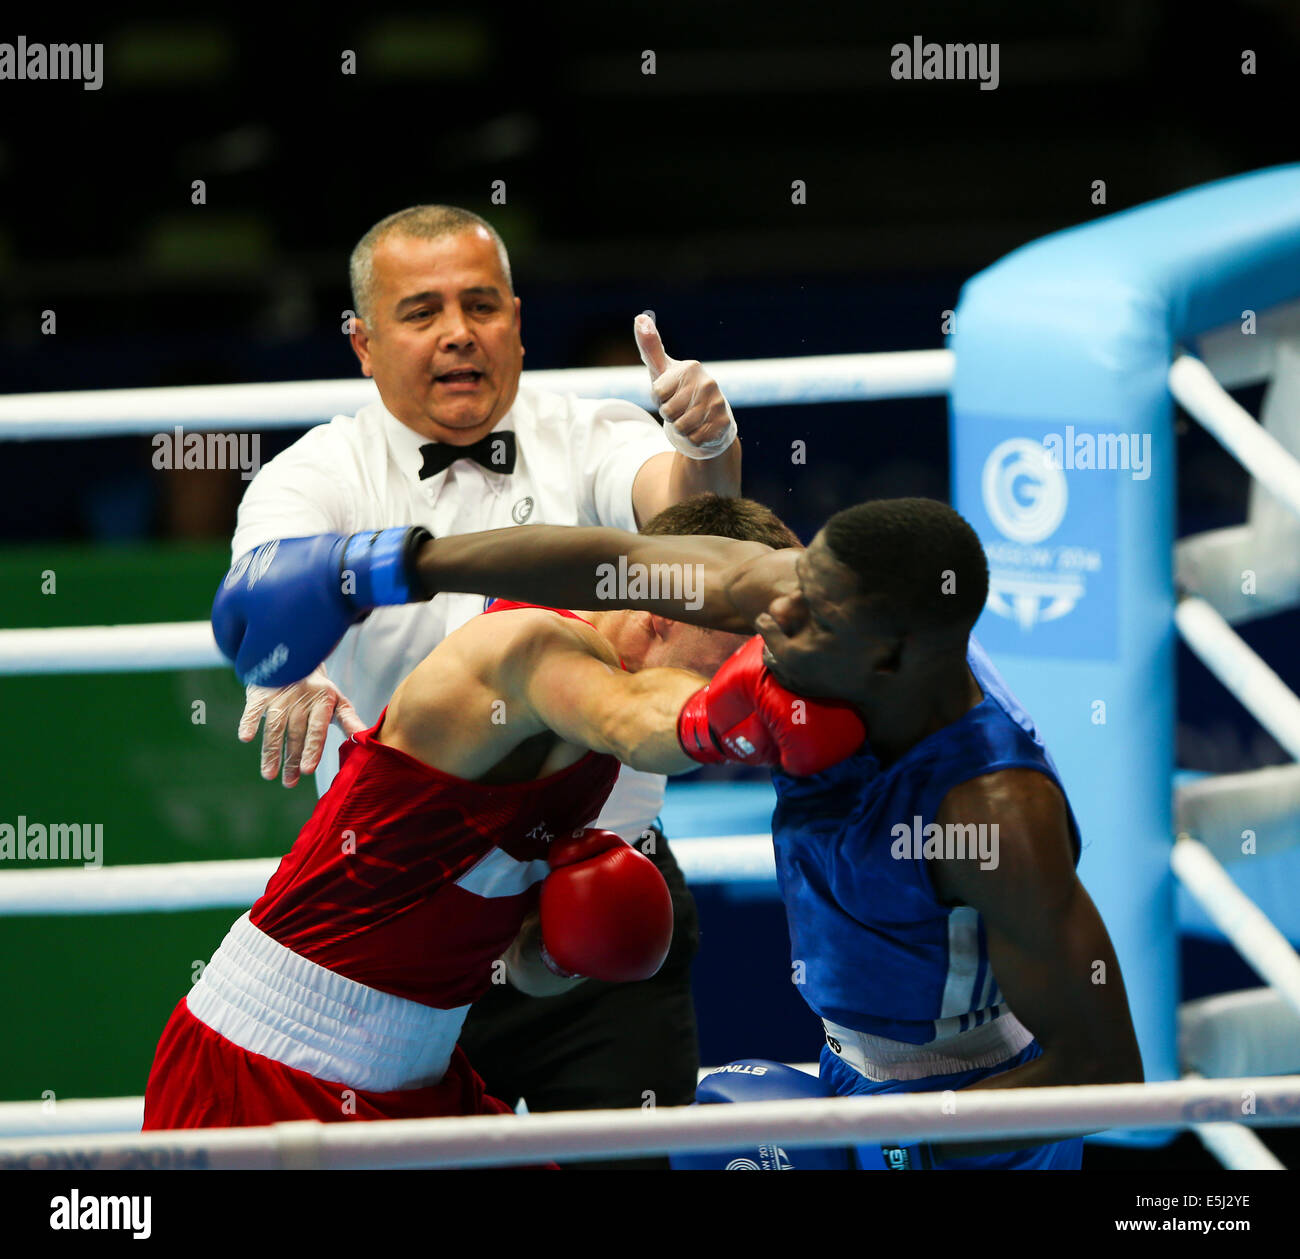 SECC Glasgow Ecosse 1 Aug 2014. Jour 9 demi-finales de boxe. Antony Fowler ENG Muziyo Benny beats ZAM. © ALAN OLIVER/Alamy vivre Banque D'Images